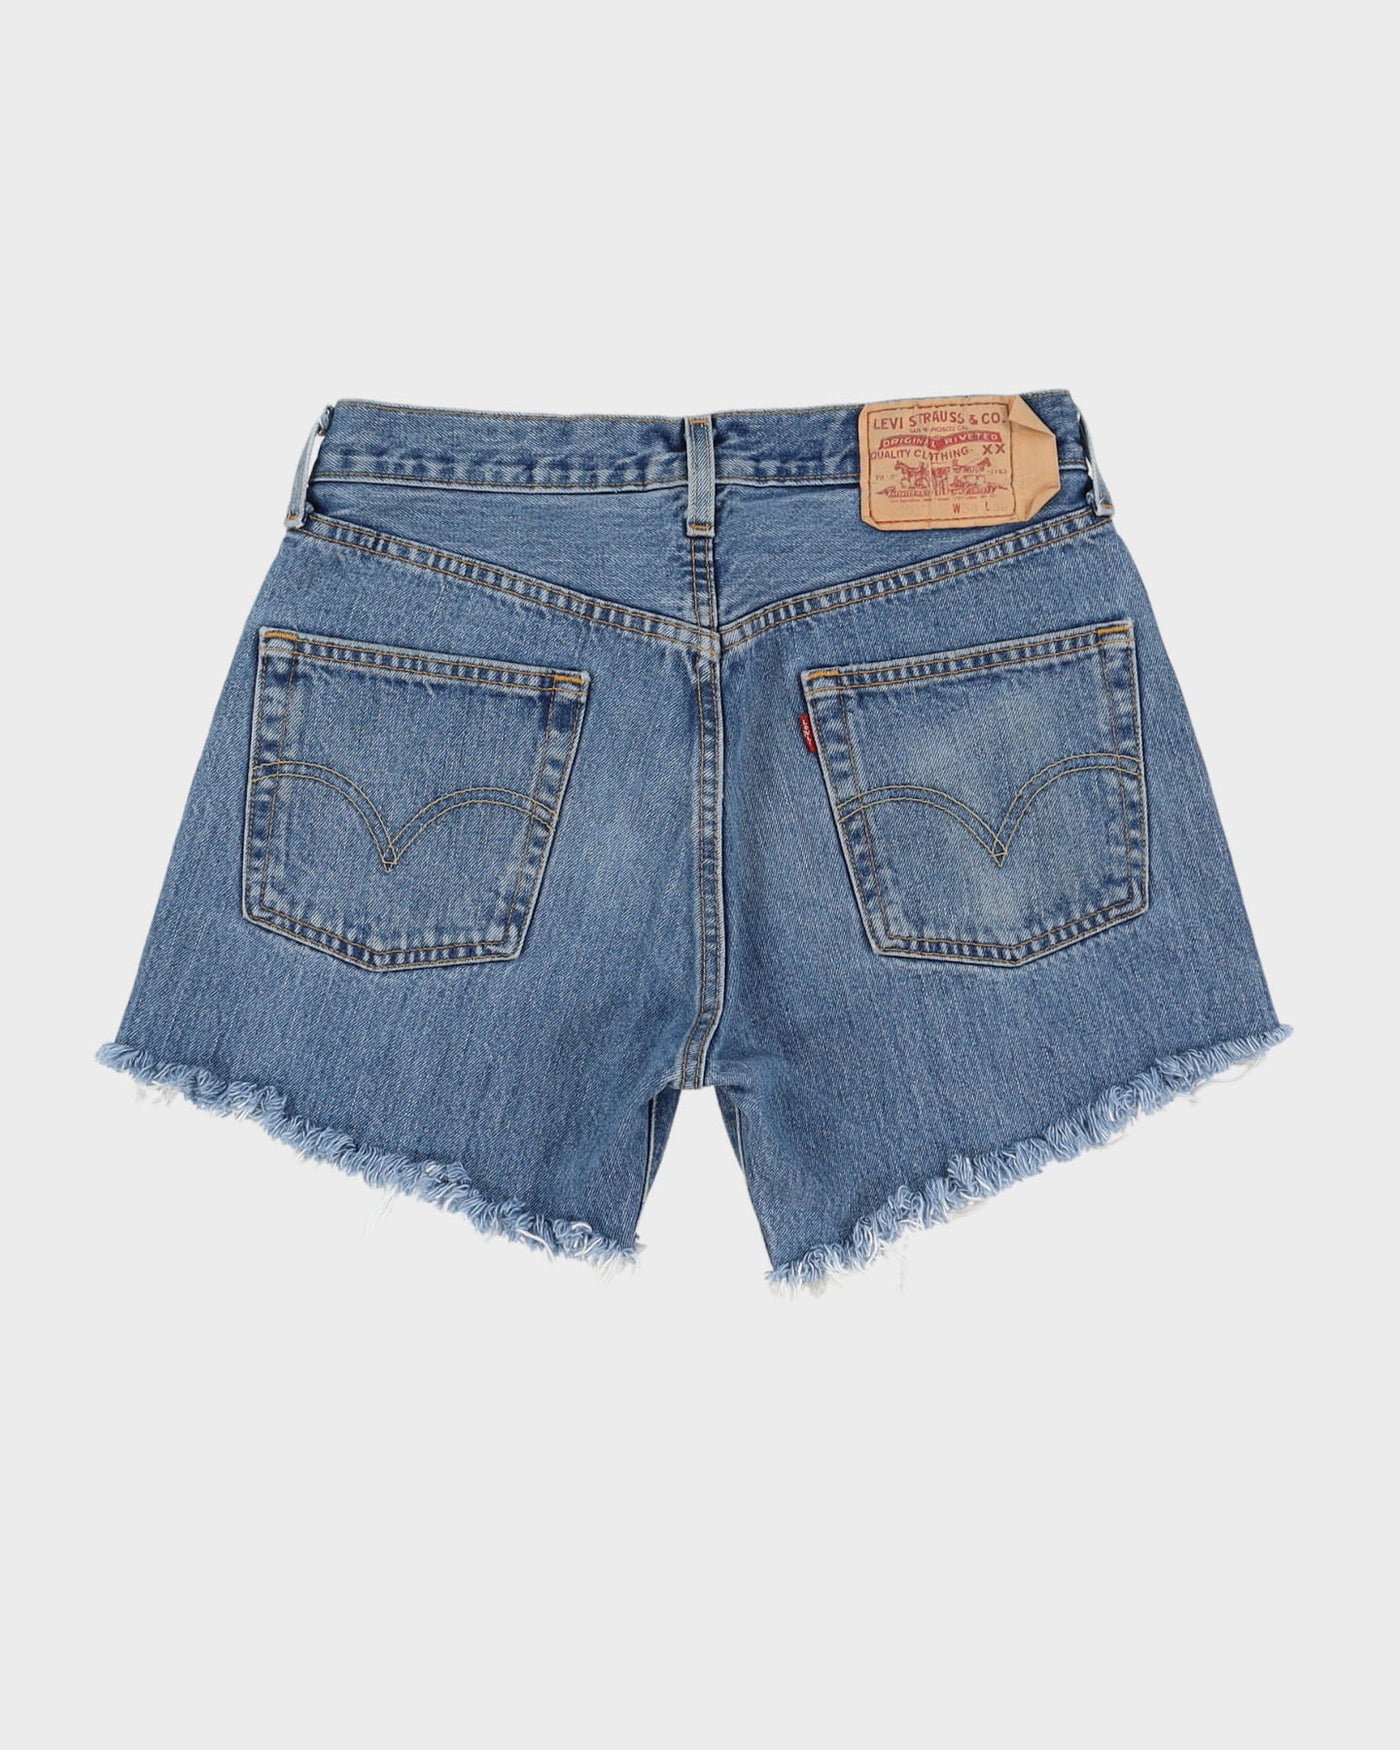 Vintage 90s Levi's 501 Blue Denim Shorts - W30